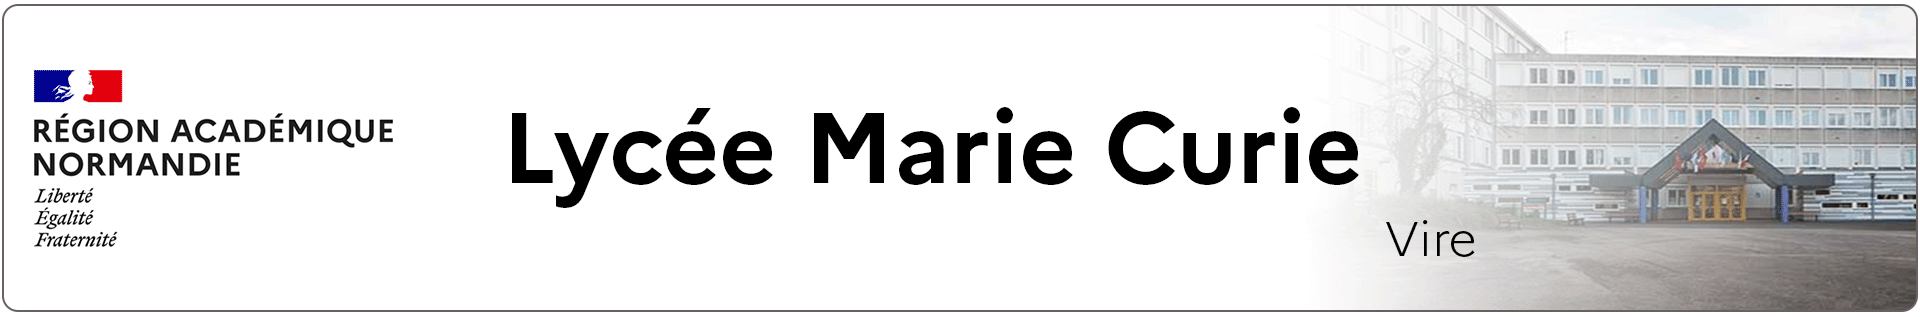 Bannière Normandie - Lycée Marie Curie - Vire